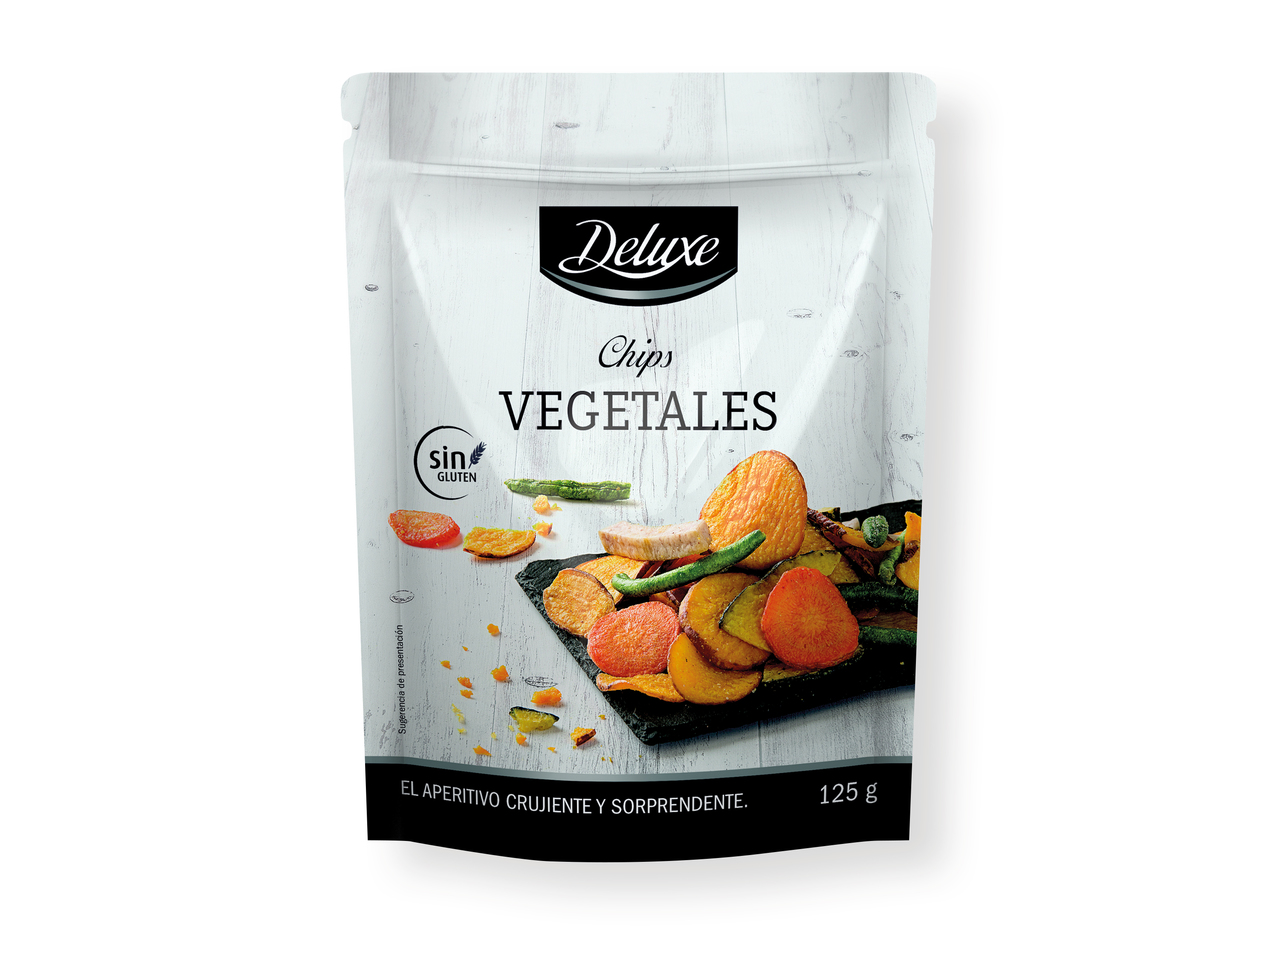 'Deluxe(R)' Chips vegetales